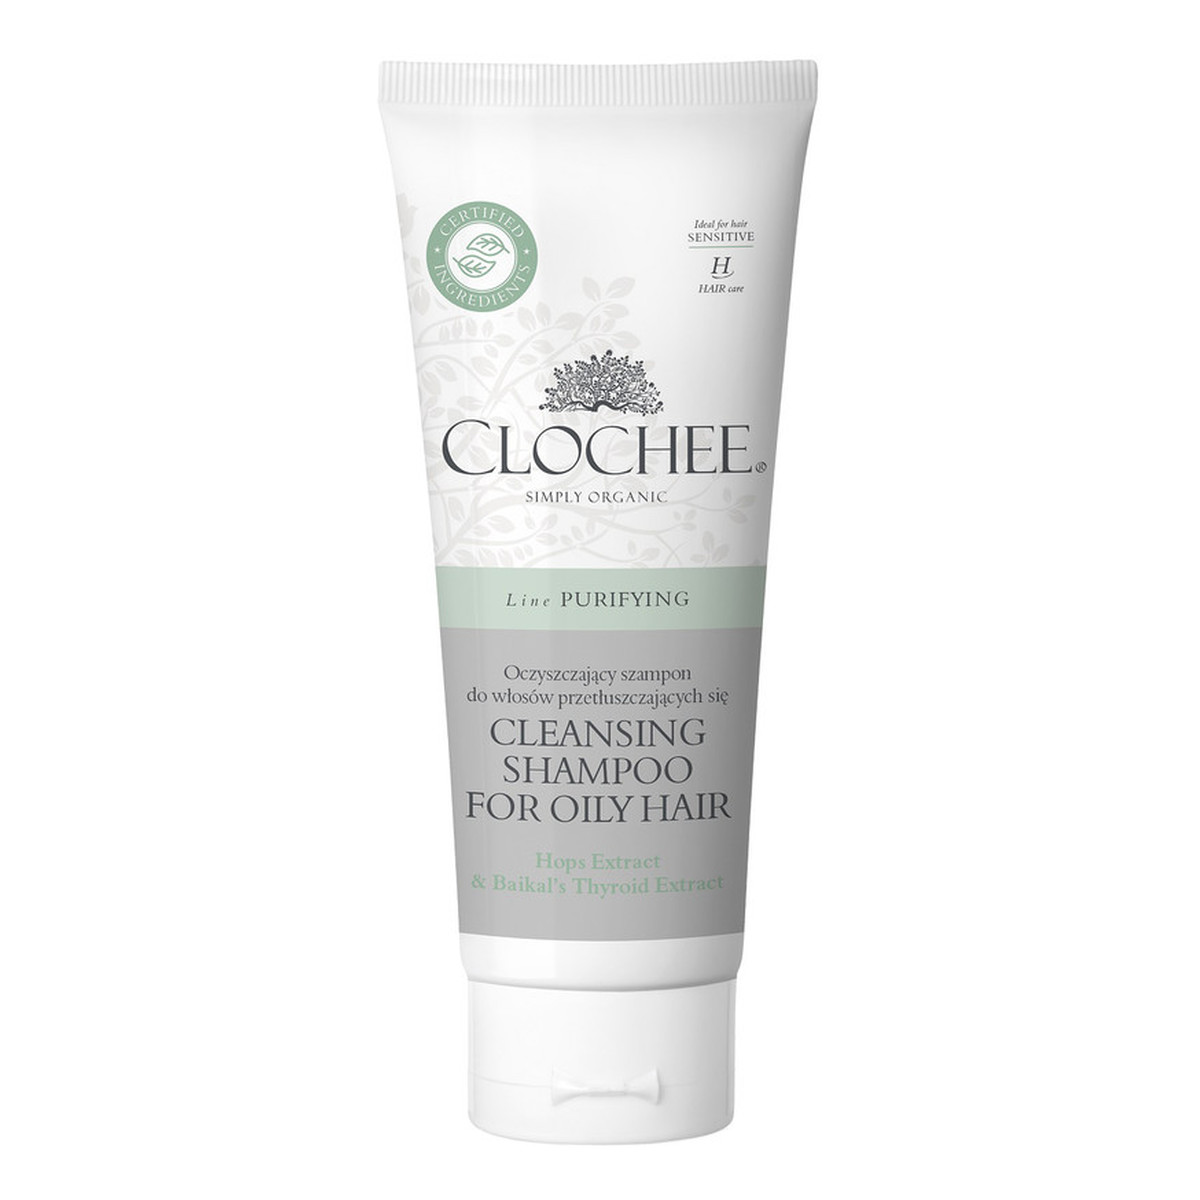 Clochee Oczyszczający szampon do włosów przetłuszczających się 200ml